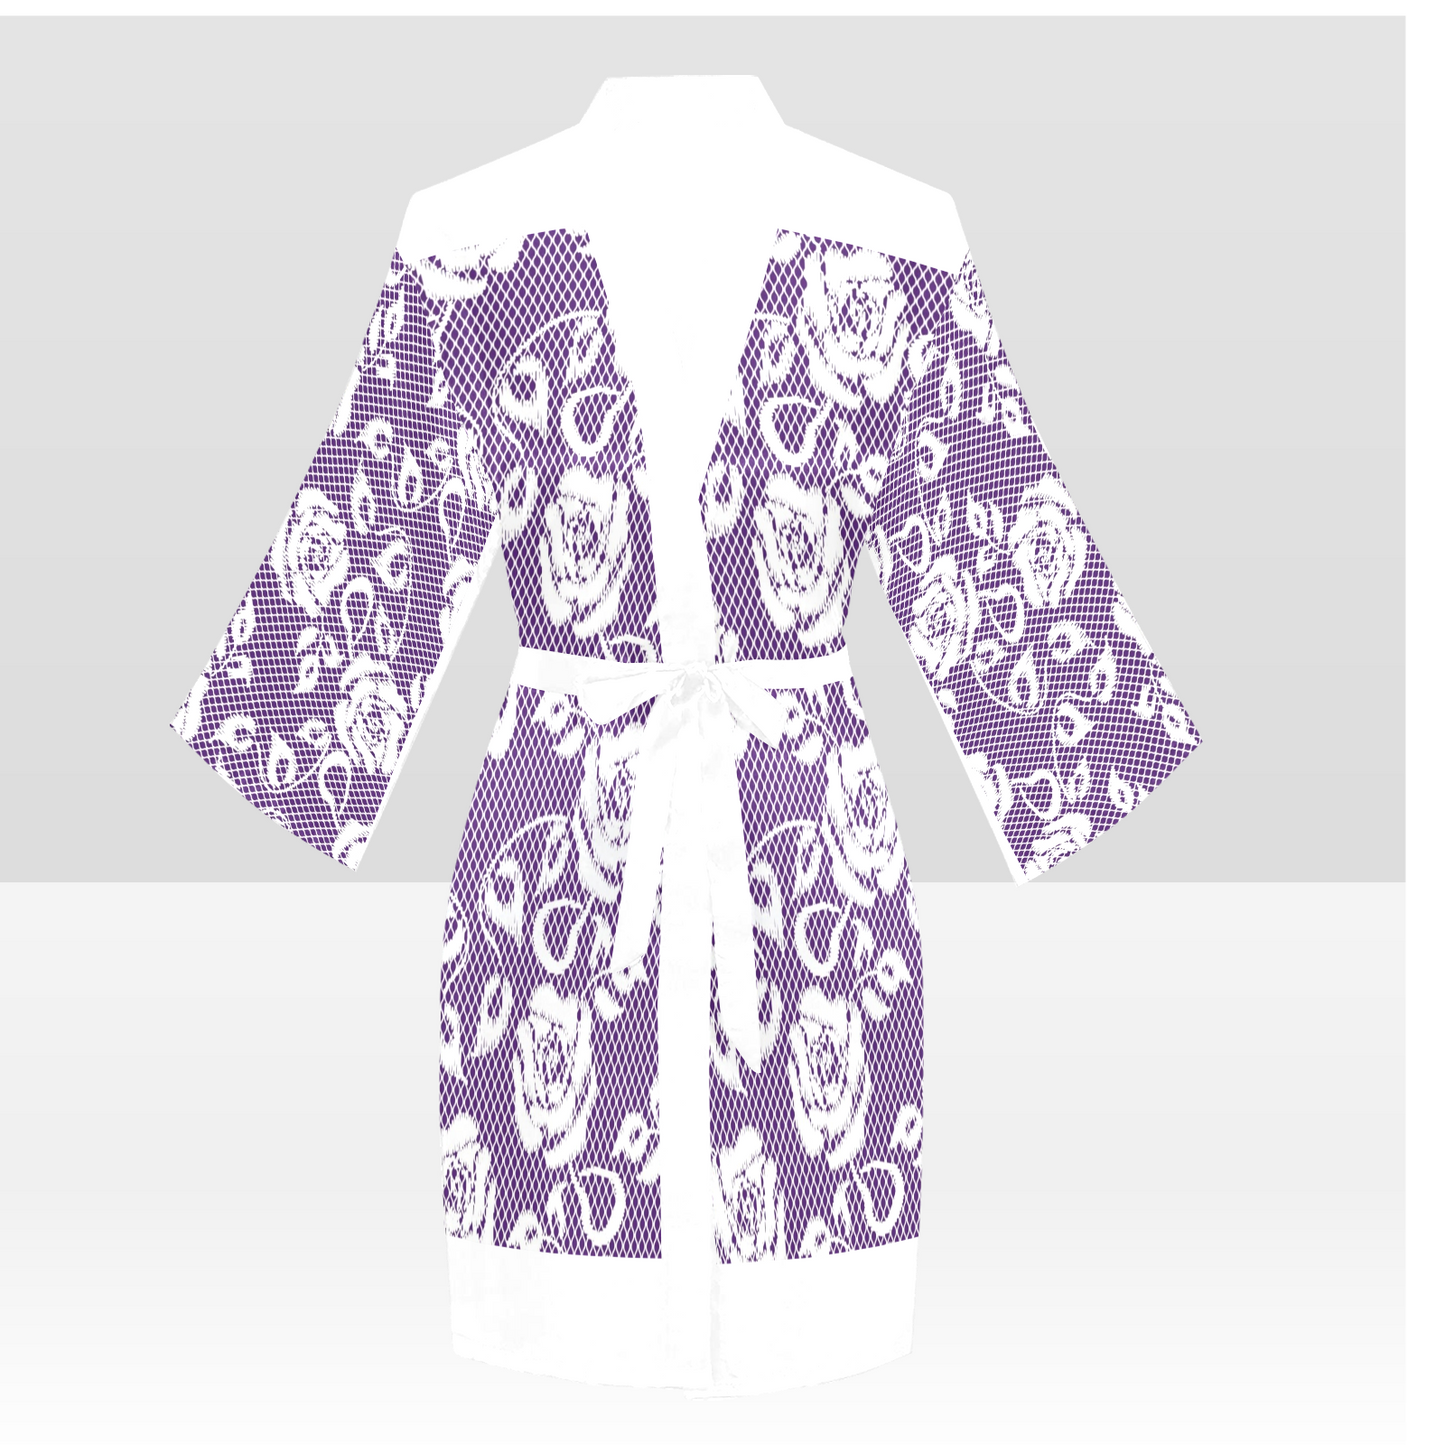 Victorian Lace Kimono Robe, Black or White Trim, Sizes XS to 2XL, Design 18